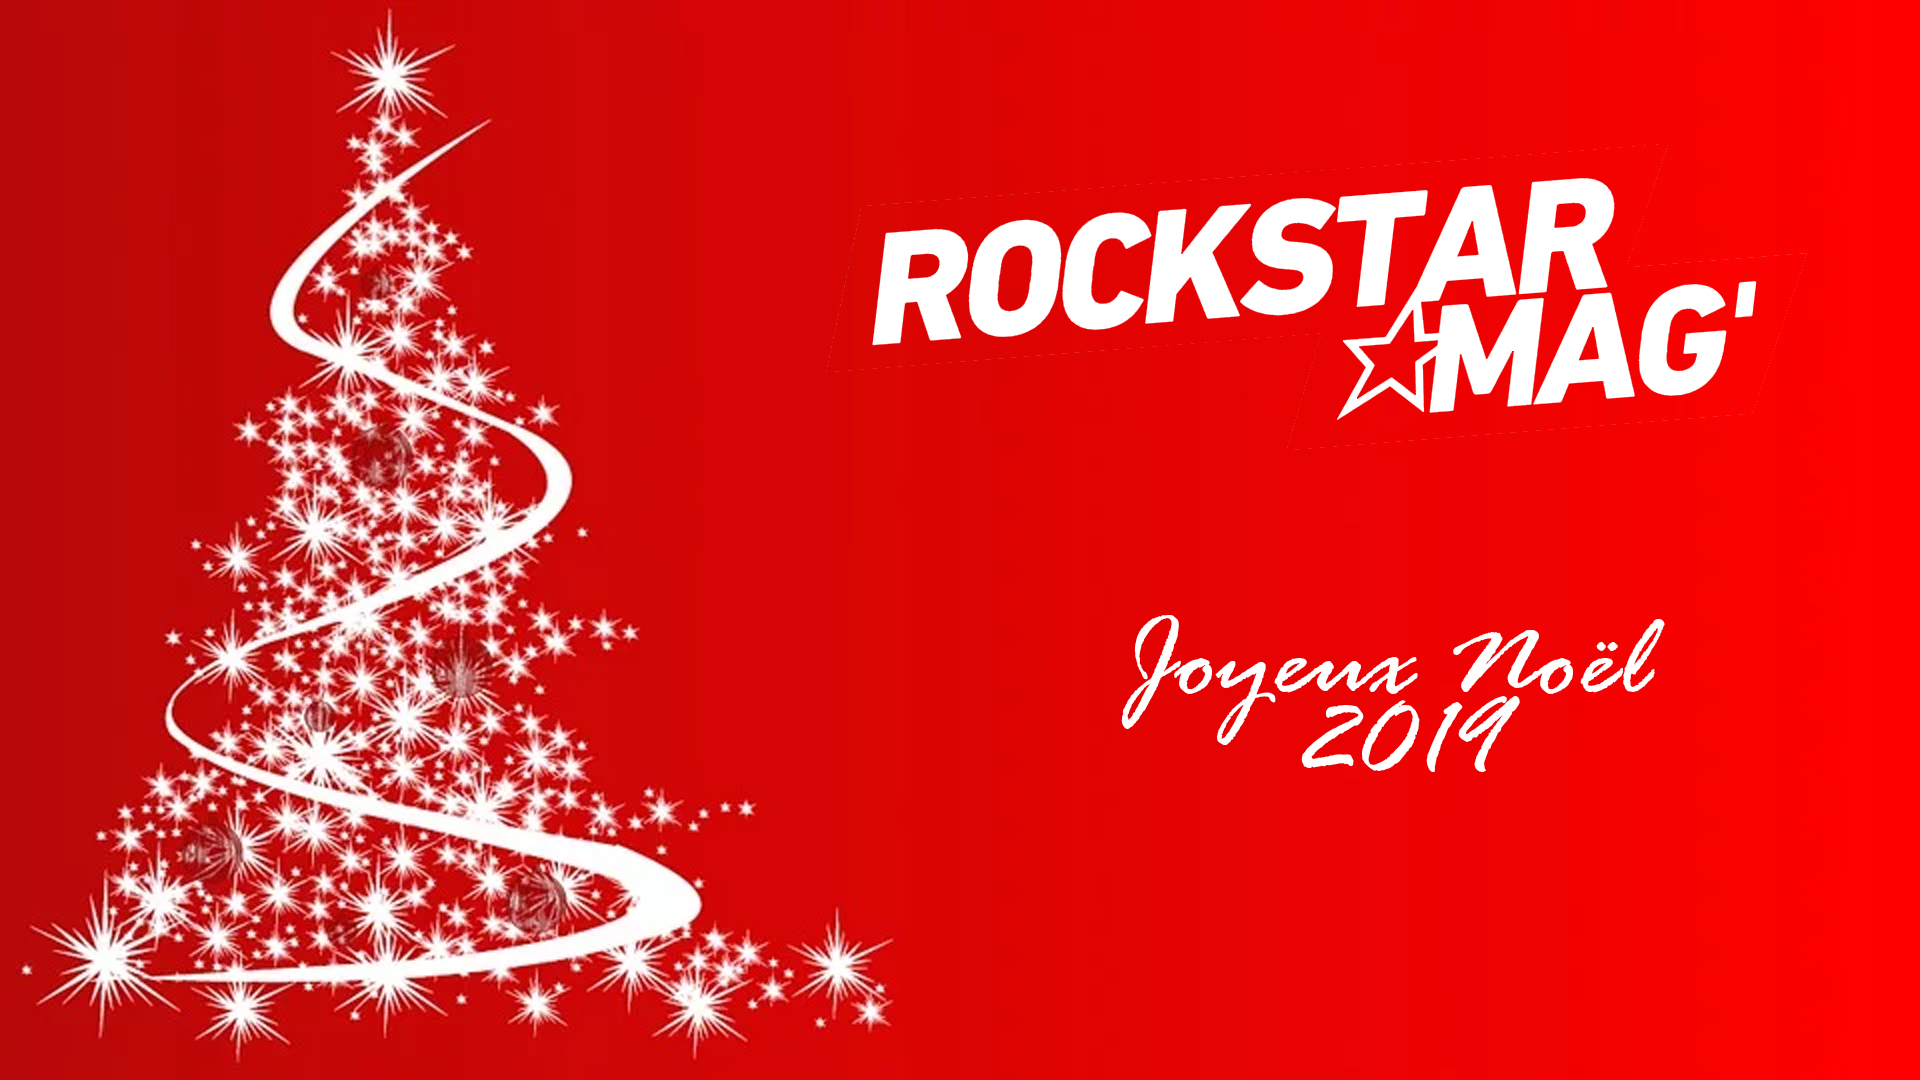 Joyeux Noël 2019 Rockstar Mag